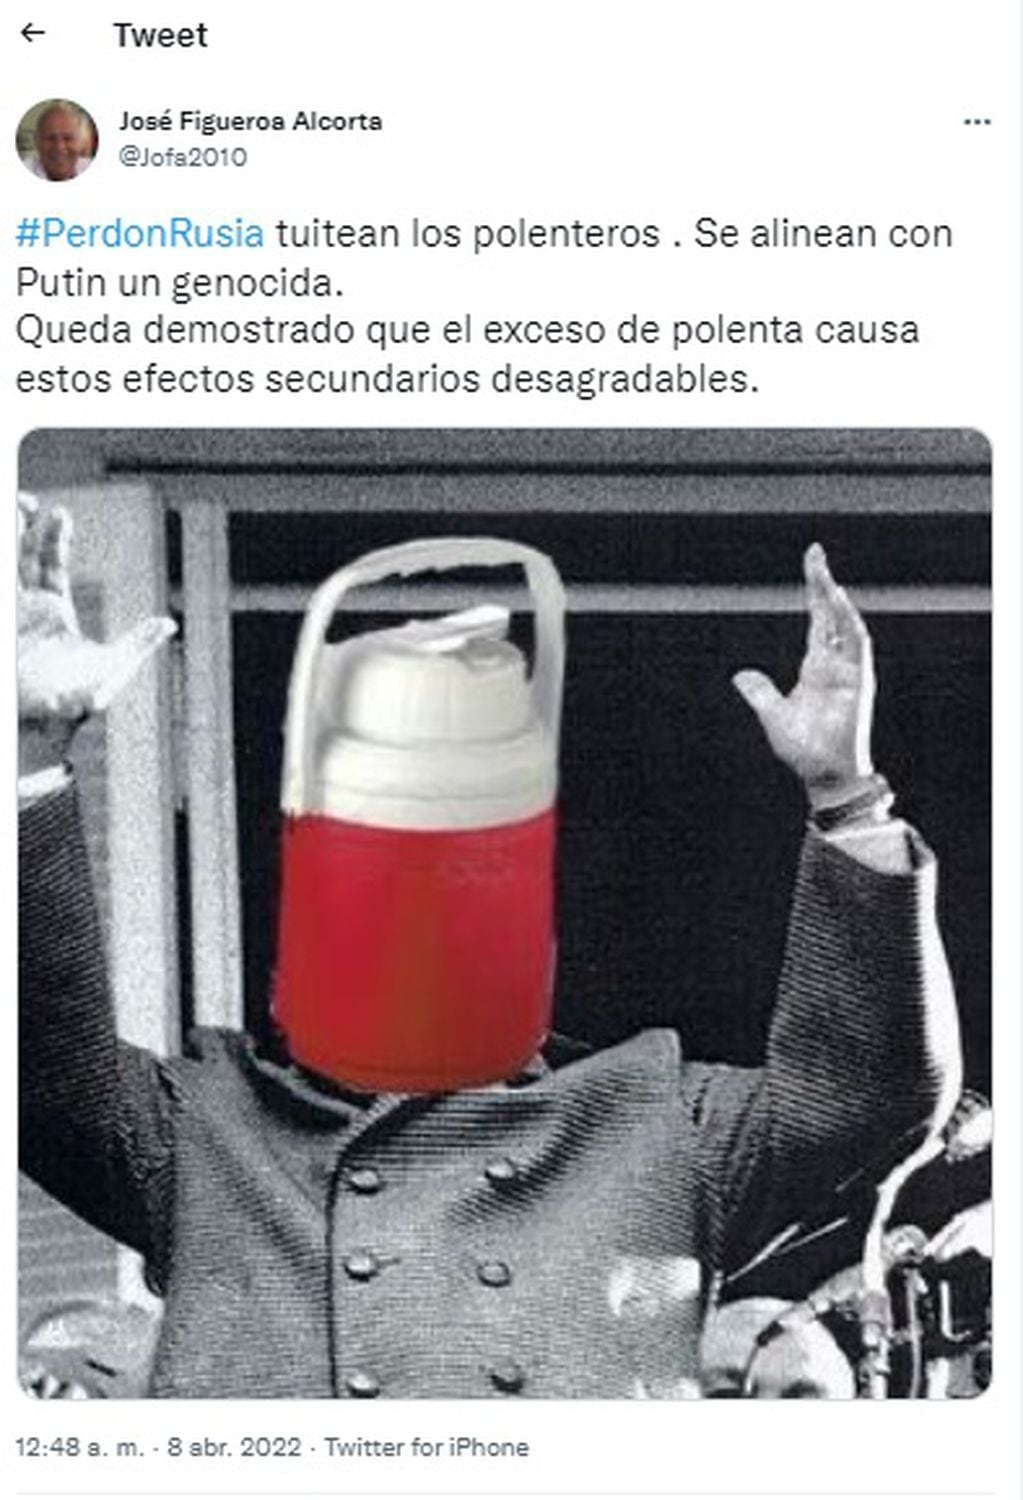 Algunos usuarios hasta se pusieron a editar fotos, como es el caso de este usuario que cambió una foto de Perón para ponerle un termo en la cabeza.